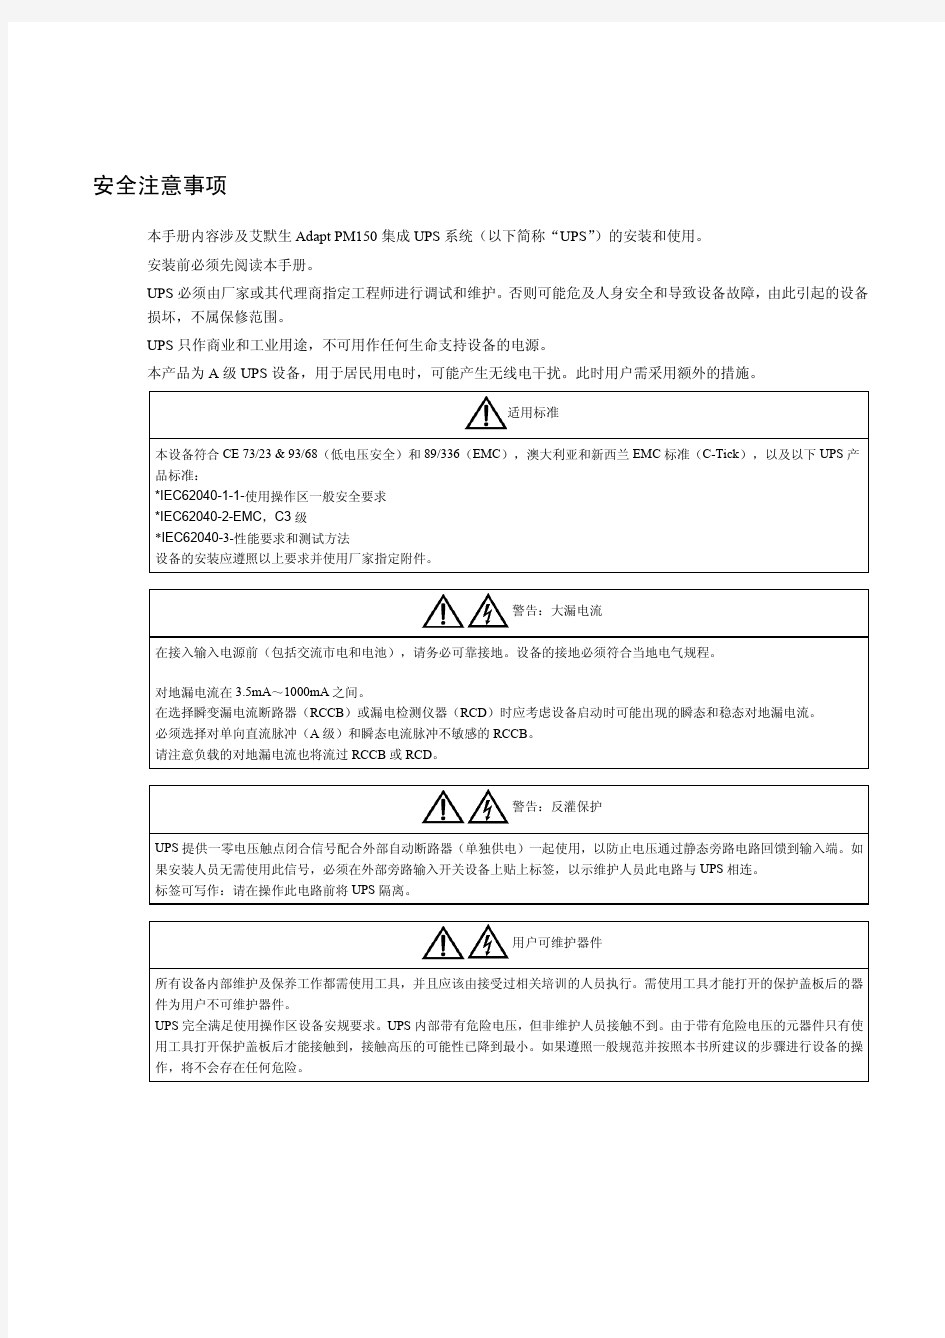 Adapt PM150 集成UPS系统用户手册(V1[1].1)